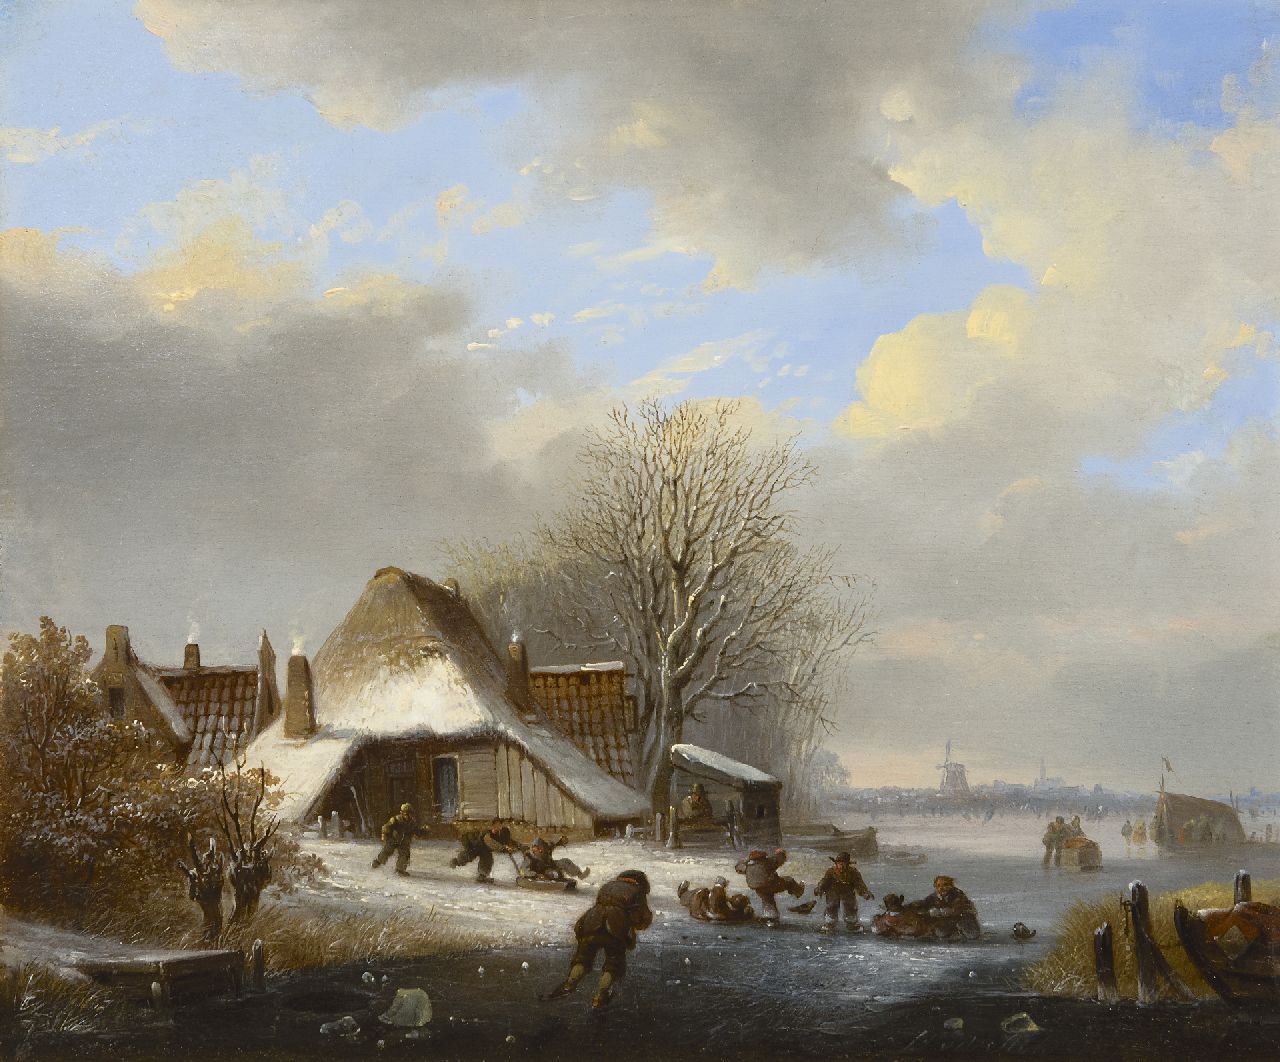 Stok J. van der | Jacobus van der Stok, Schaatspret op een bevroren rivier, olieverf op paneel 26,3 x 31,9 cm, gesigneerd rechtsonder